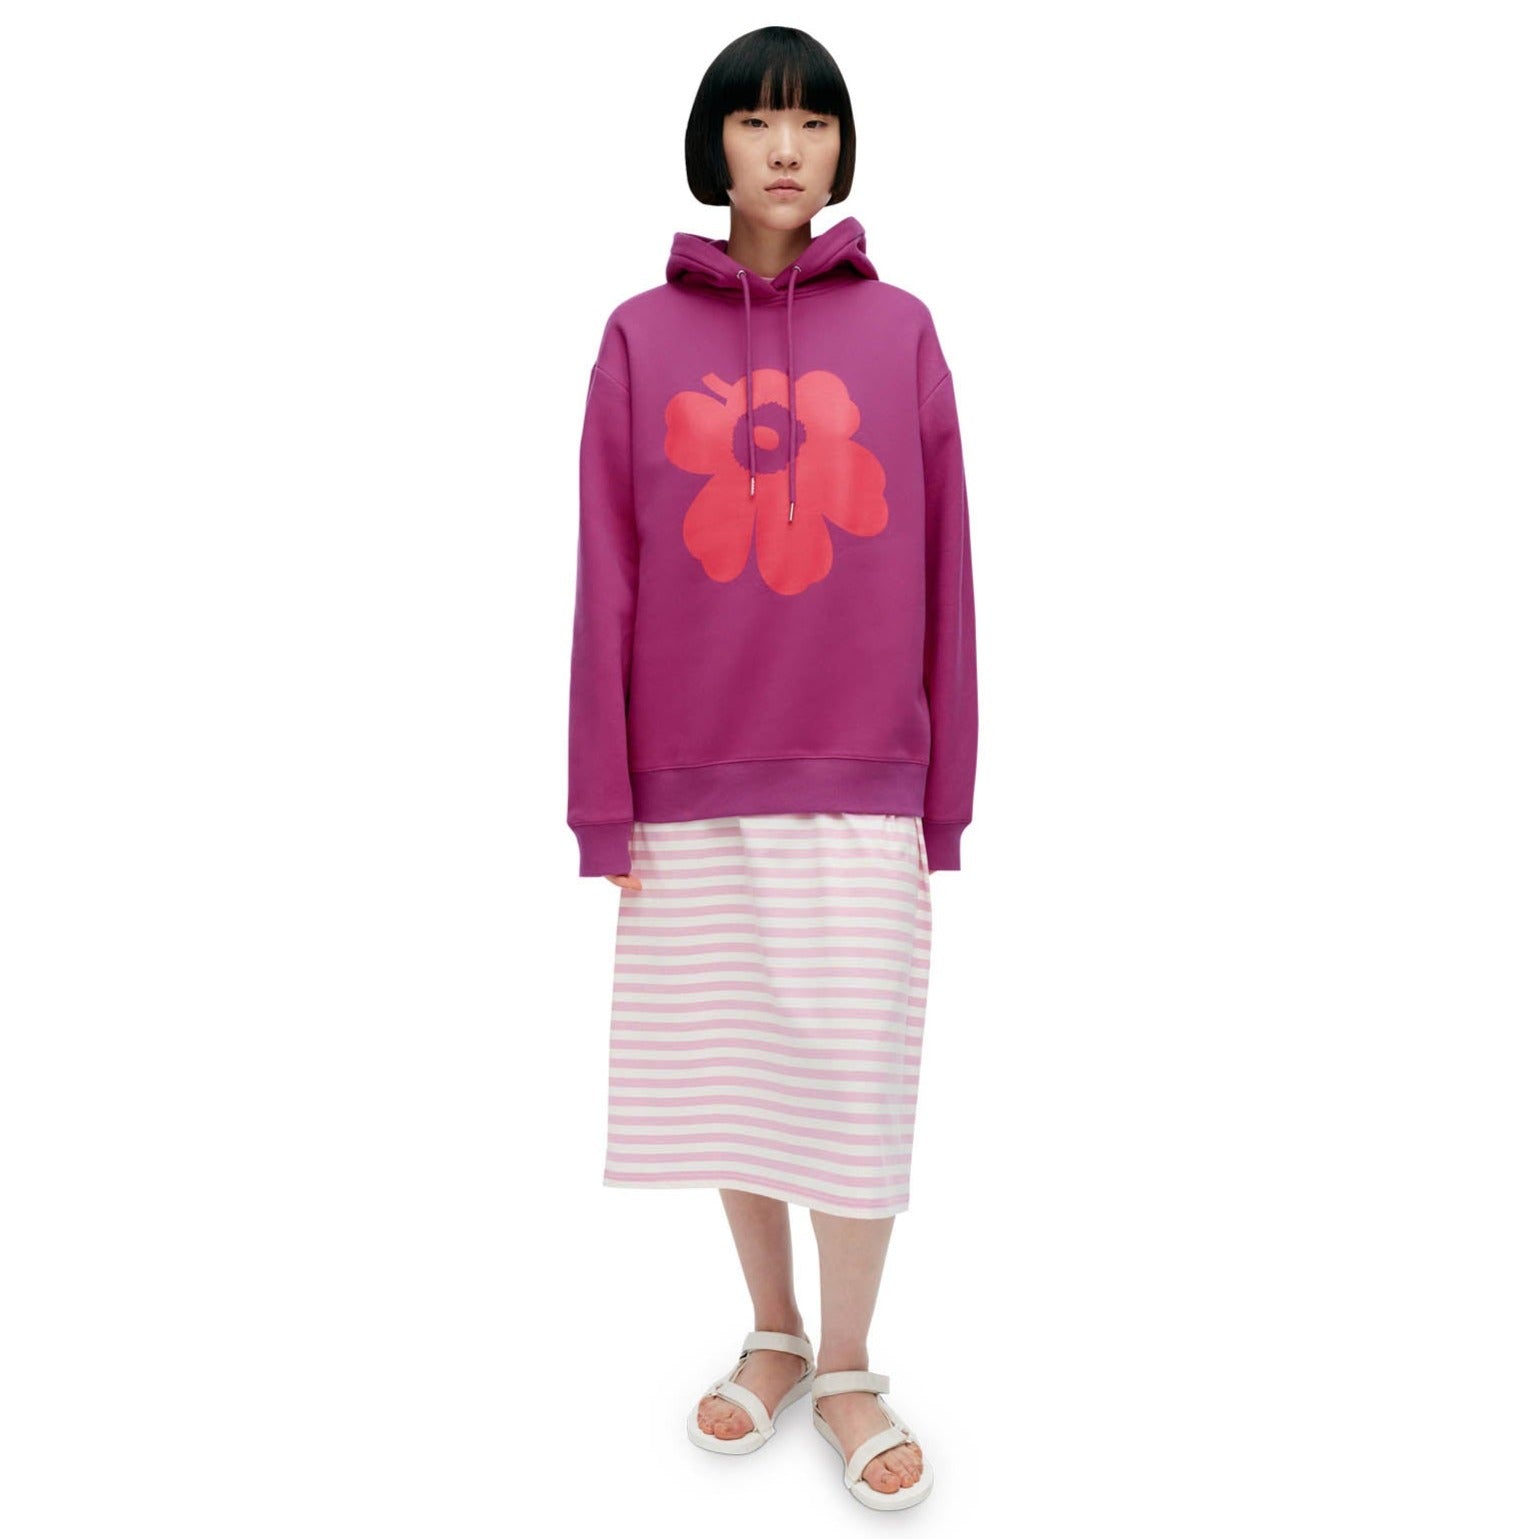 Marimekko Runoja Unikko Hooded Sweatshirt, Fushia With Red Flower